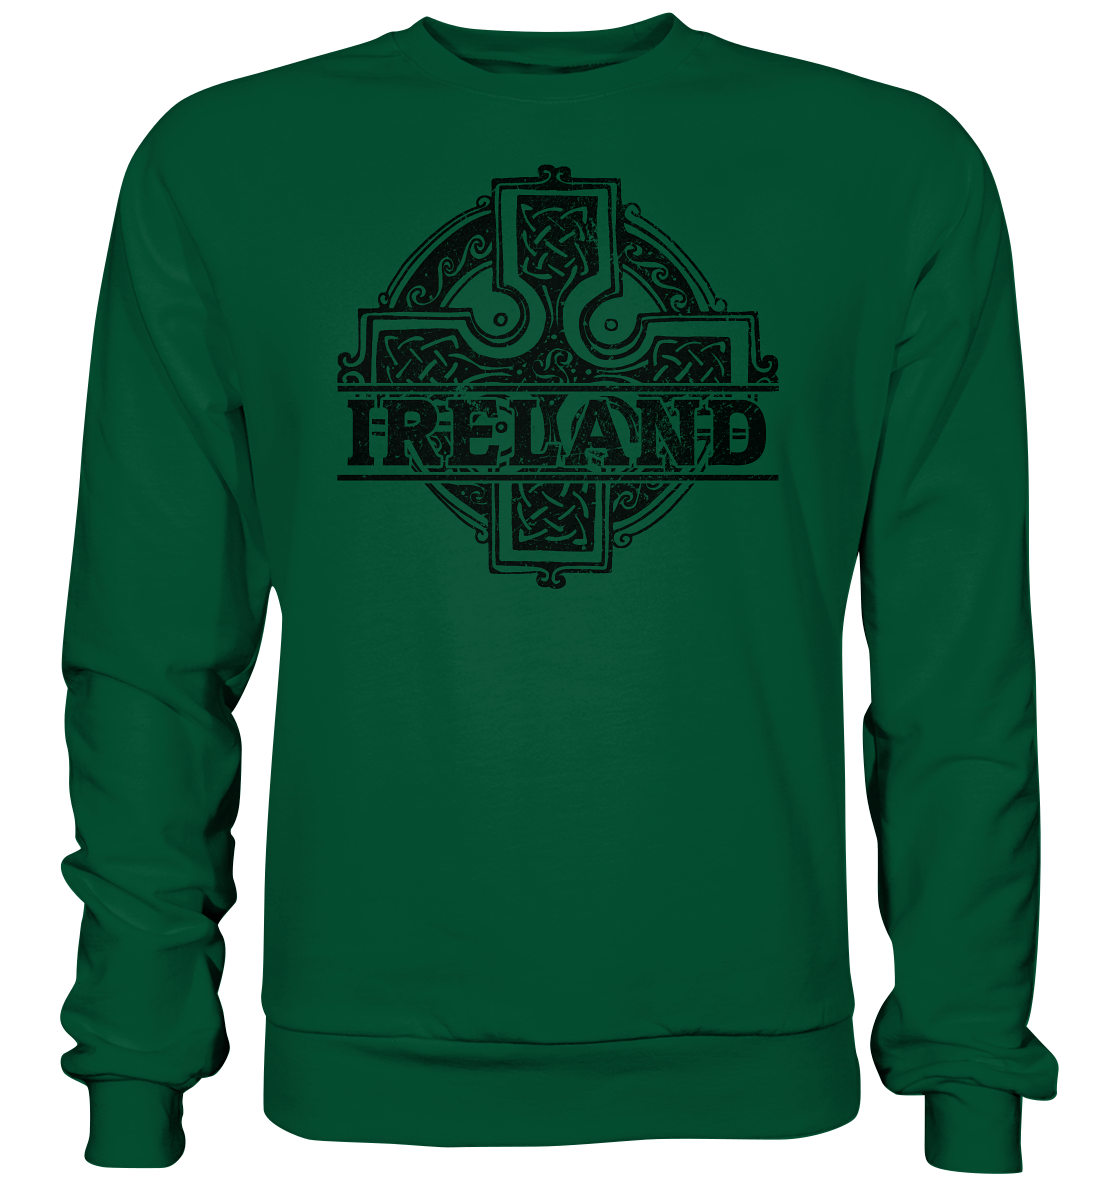 Ireland "Celtic Cross" - Basic Sweatshirt